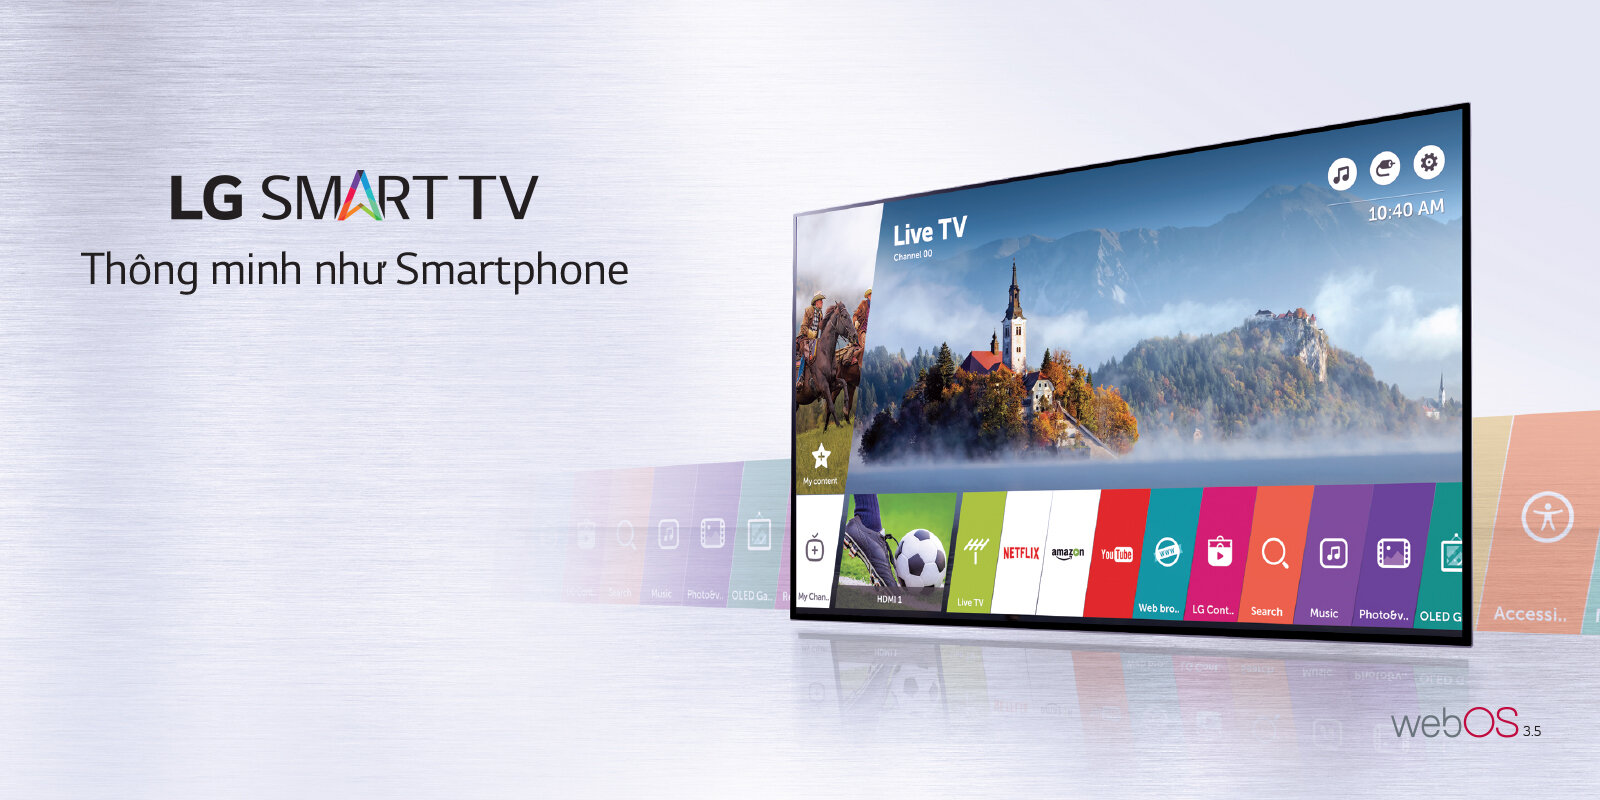 Smart tivi là lựa chọn của nhiều người khi được hỏi nên mua nên mua smart tivi hay tivi thường